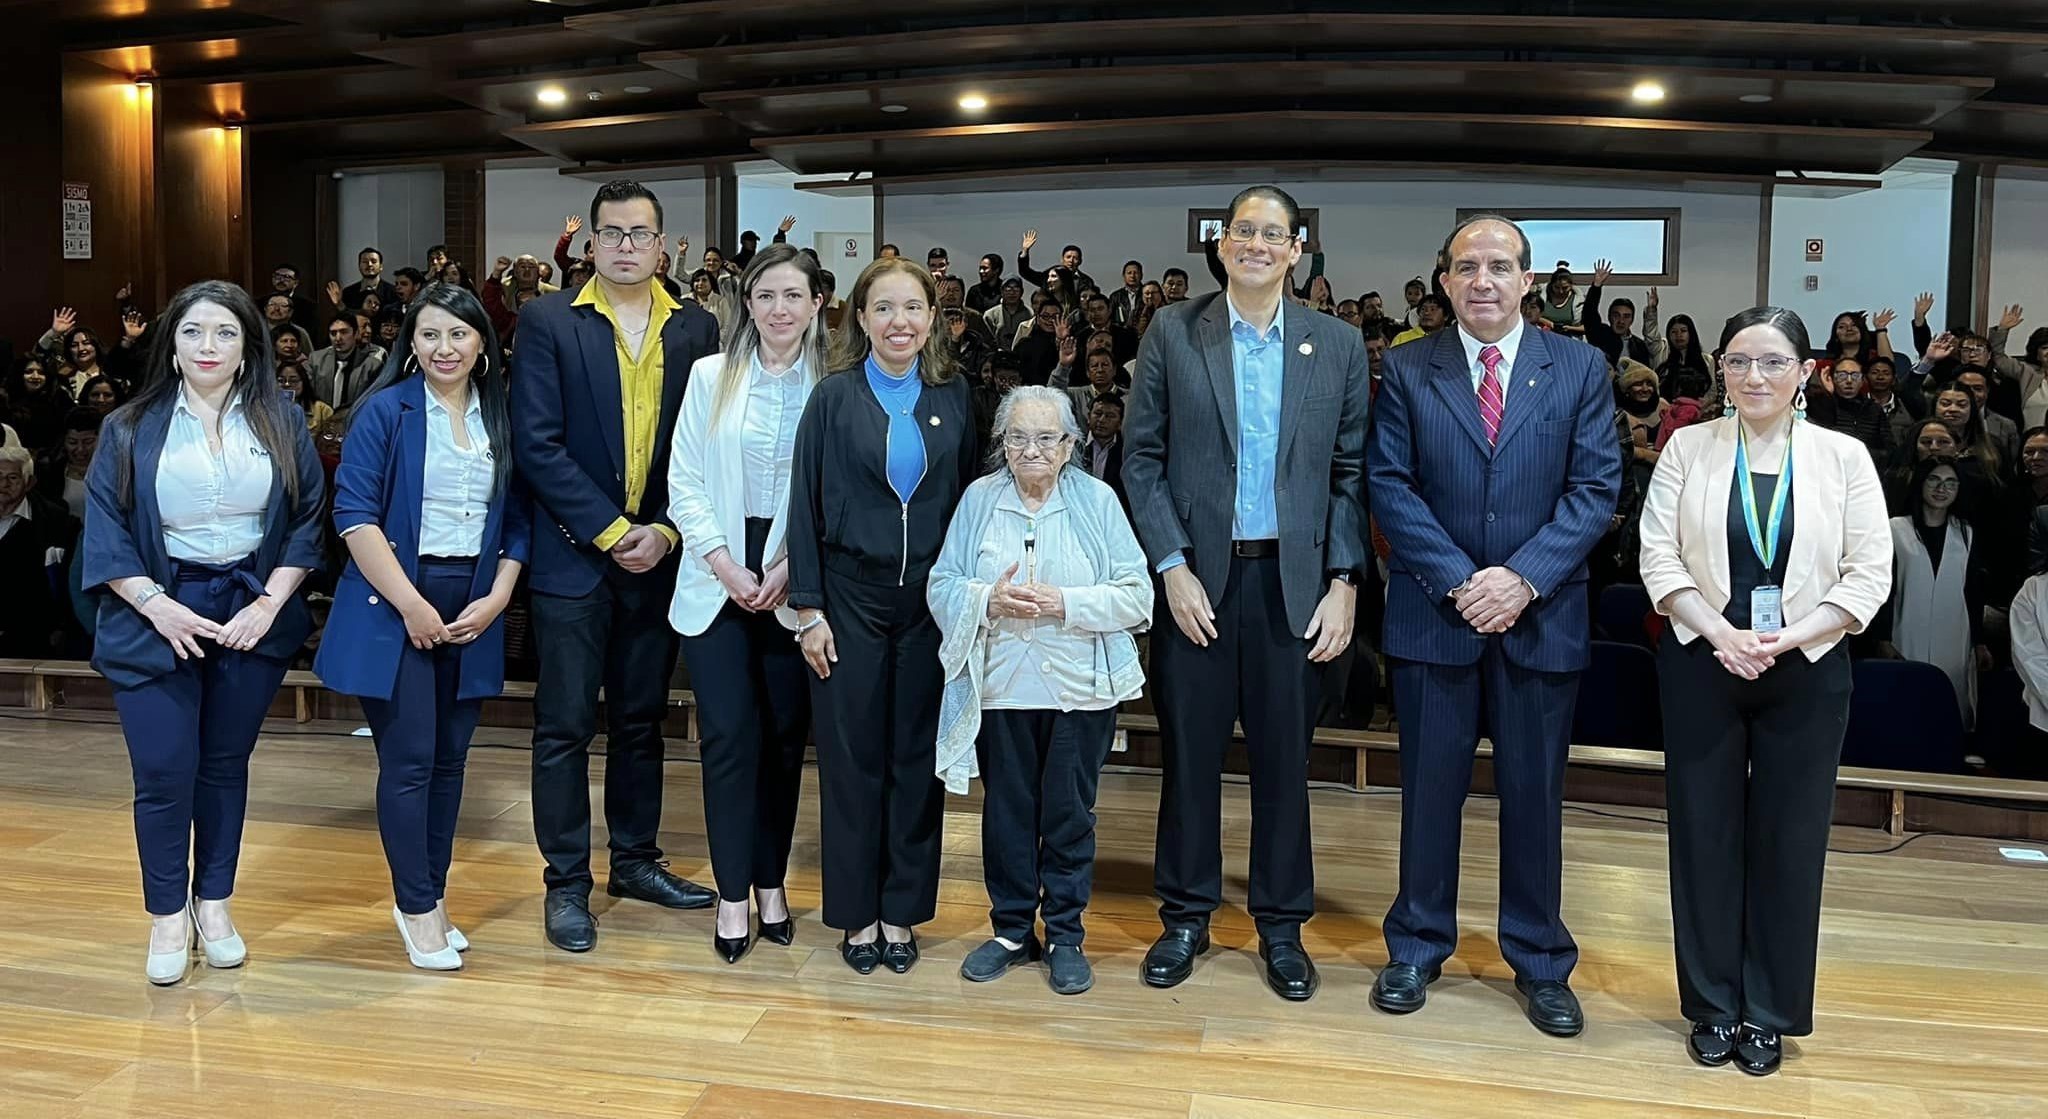 El Gobernador de Tungurahua, recibió la visita del Ministro de Telecomunicaciones y de la Sociedad de la Información César Martín. A través del proyecto: Puntos Digitales Gratuitos Mega Ambato, se llevó a cabo la certificación de 80 personas del Centro Comercial Popular Simón Bolivar.